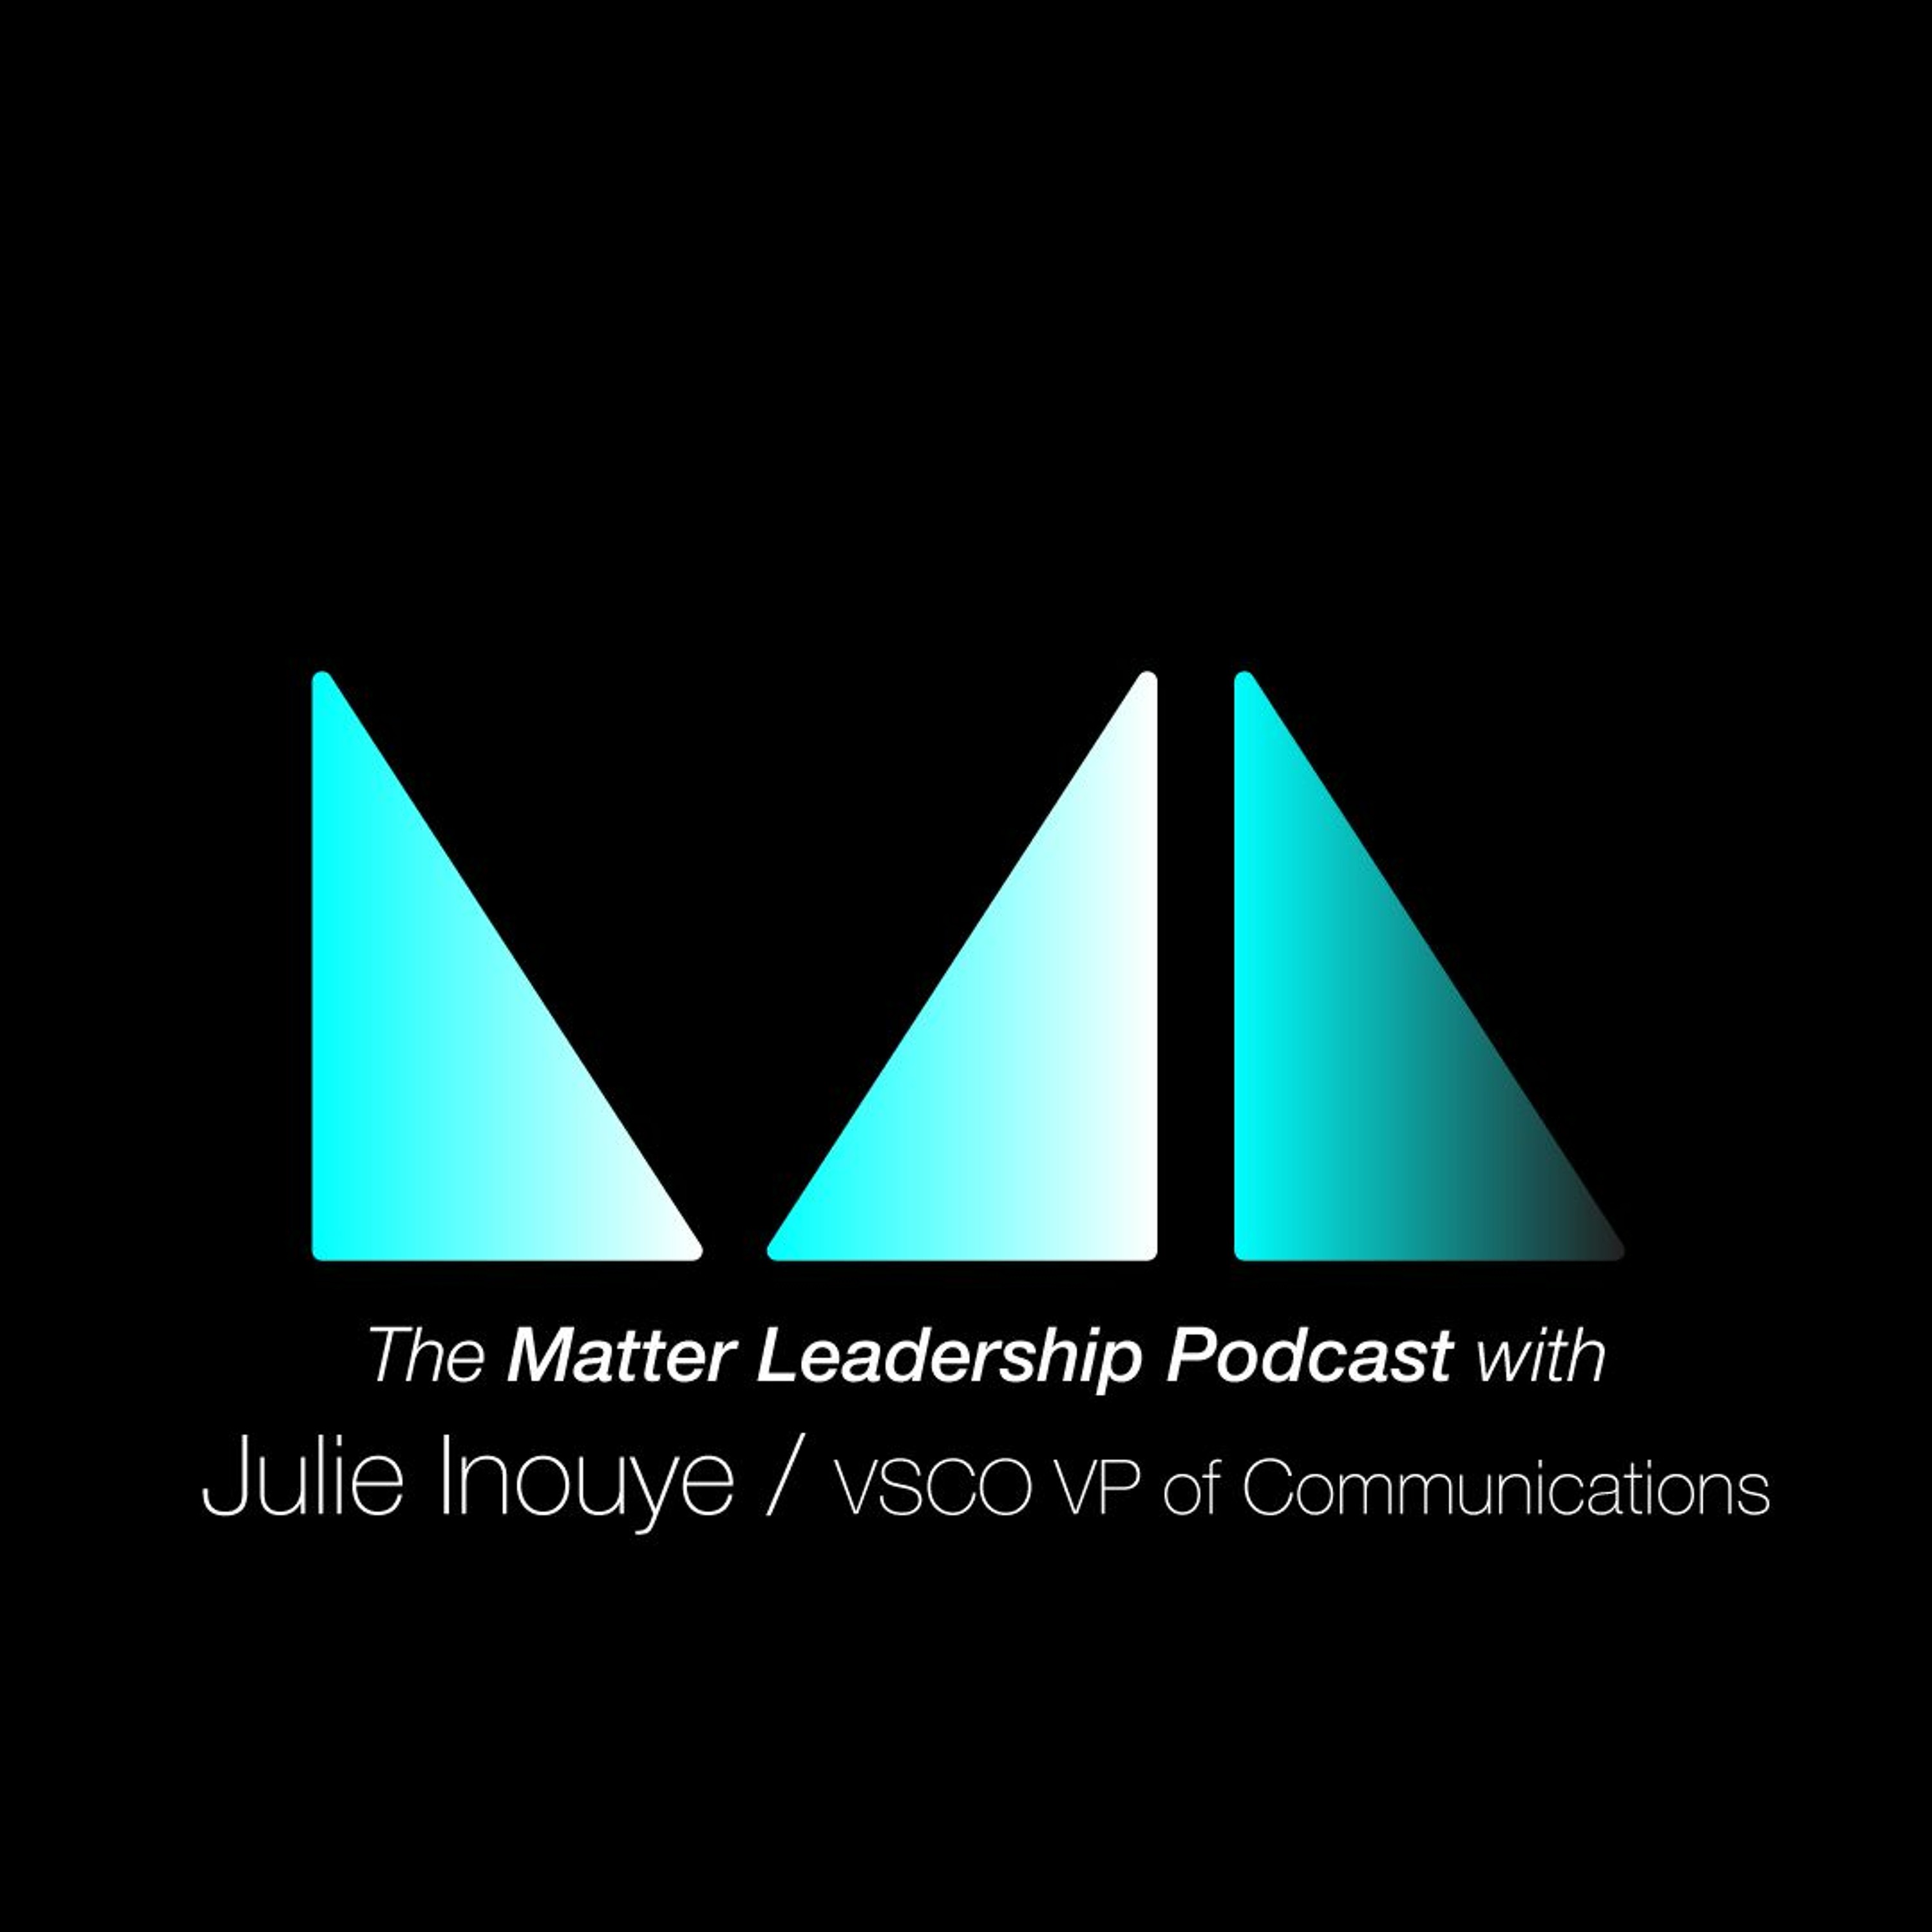 The Matter Leadership Podcast: Julie Inouye / VSCO VP of Communications